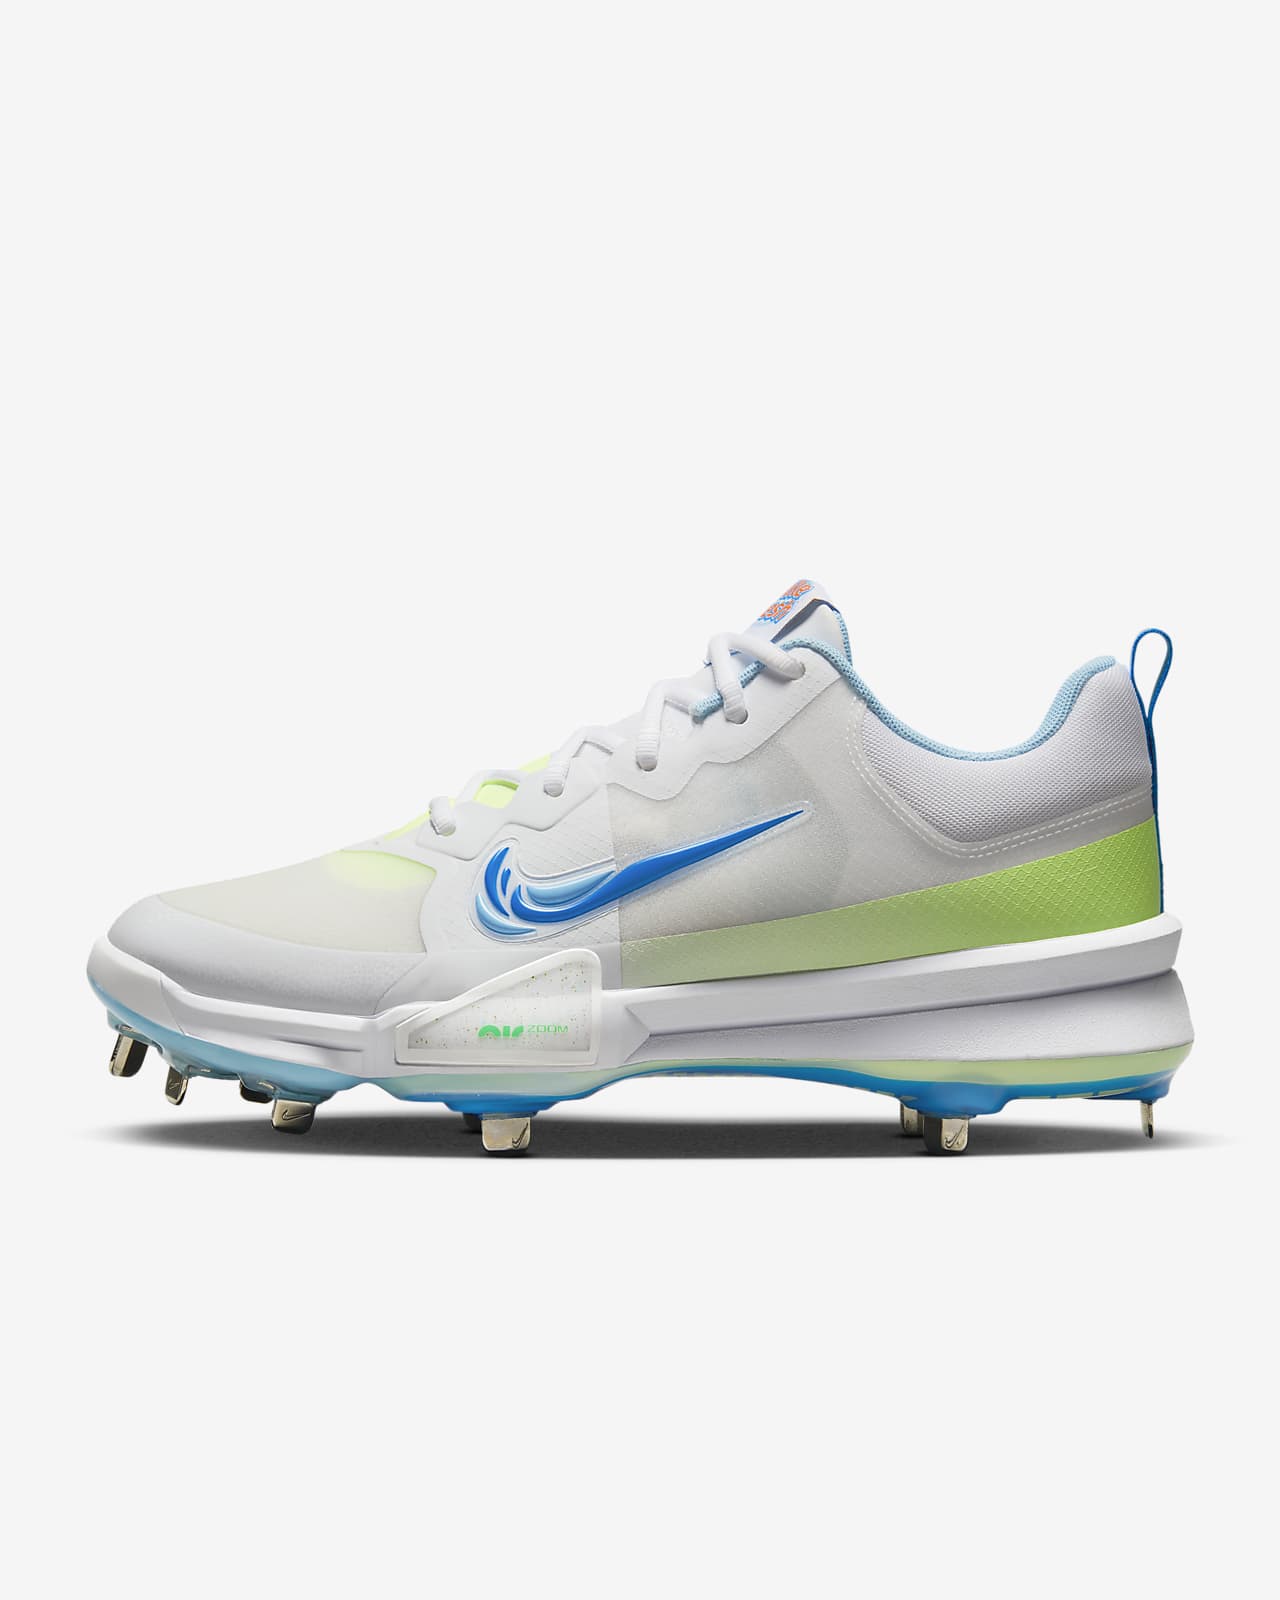 Nike Force Trout 9 Pro Baseball Cleats